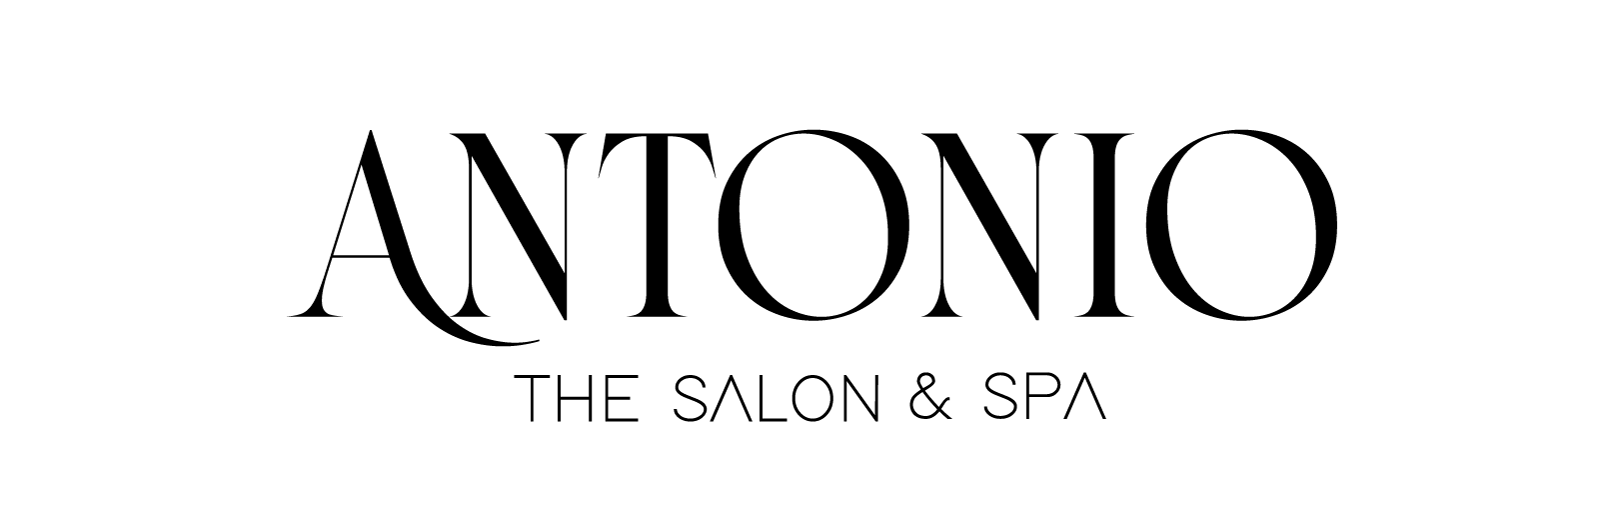 Antonio The Salon & Spa